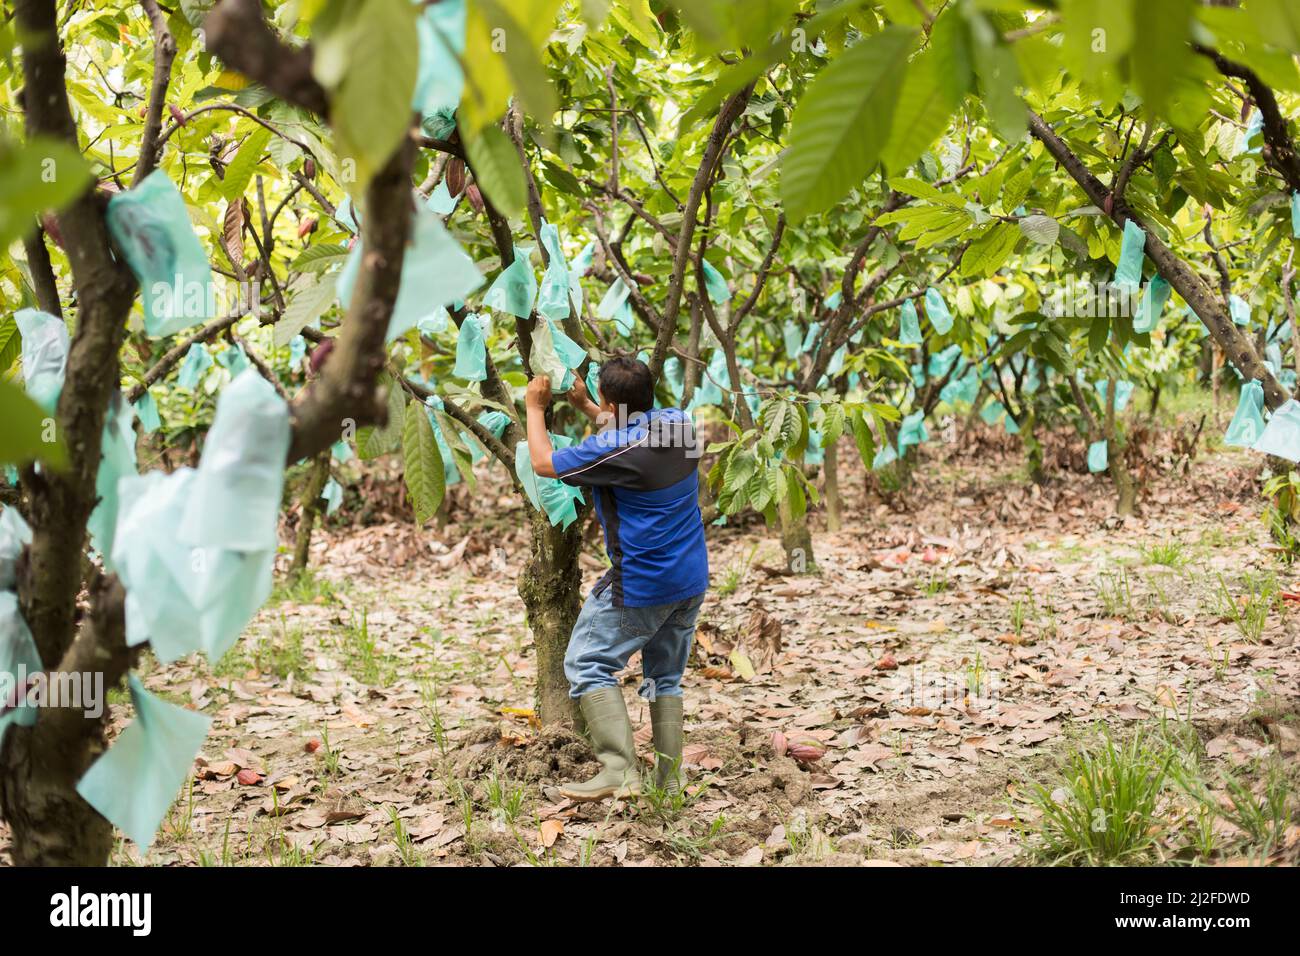 Las bolsas de polietileno (plástico) cubren las vainas de cacao que crecen en los árboles para protegerlas de enfermedades en una granja de cacao en Mamuju Regency, Indonesia, Asia. Foto de stock